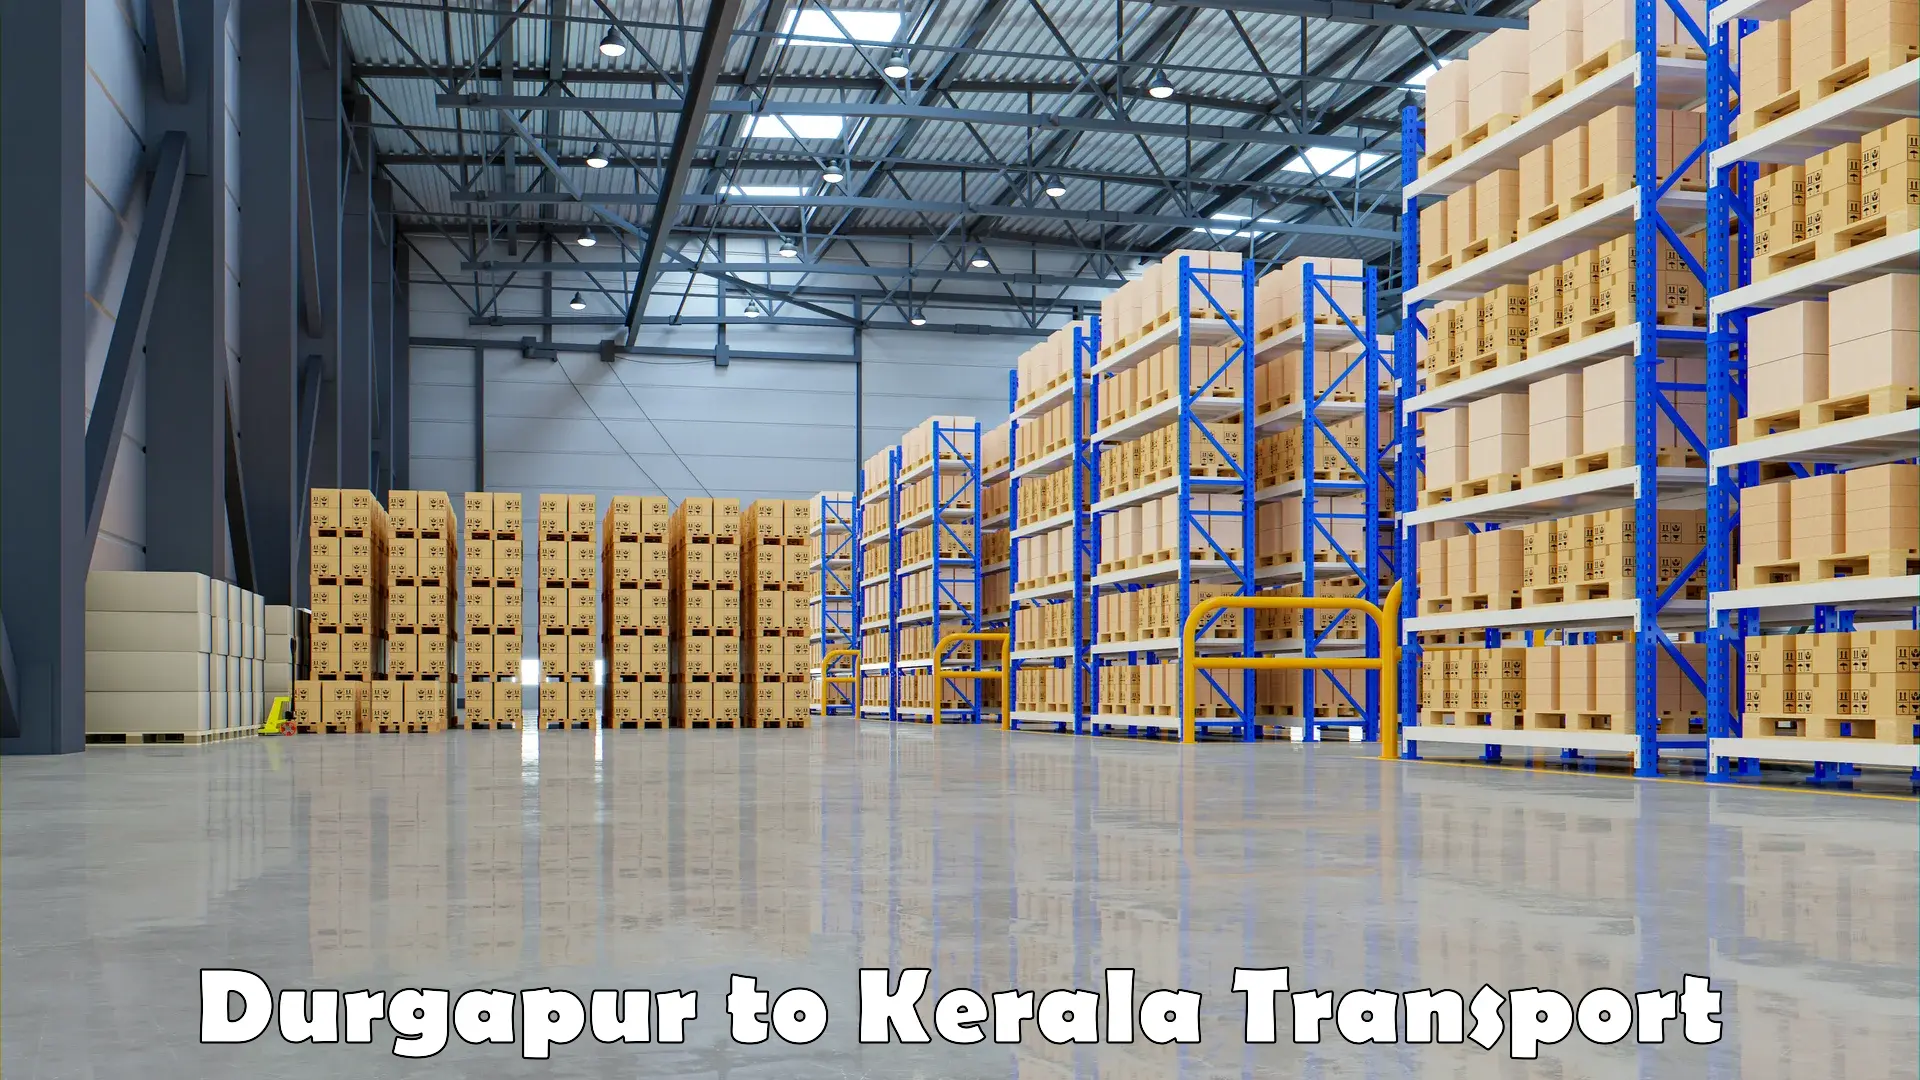 Cargo transport services Durgapur to Kuttikol